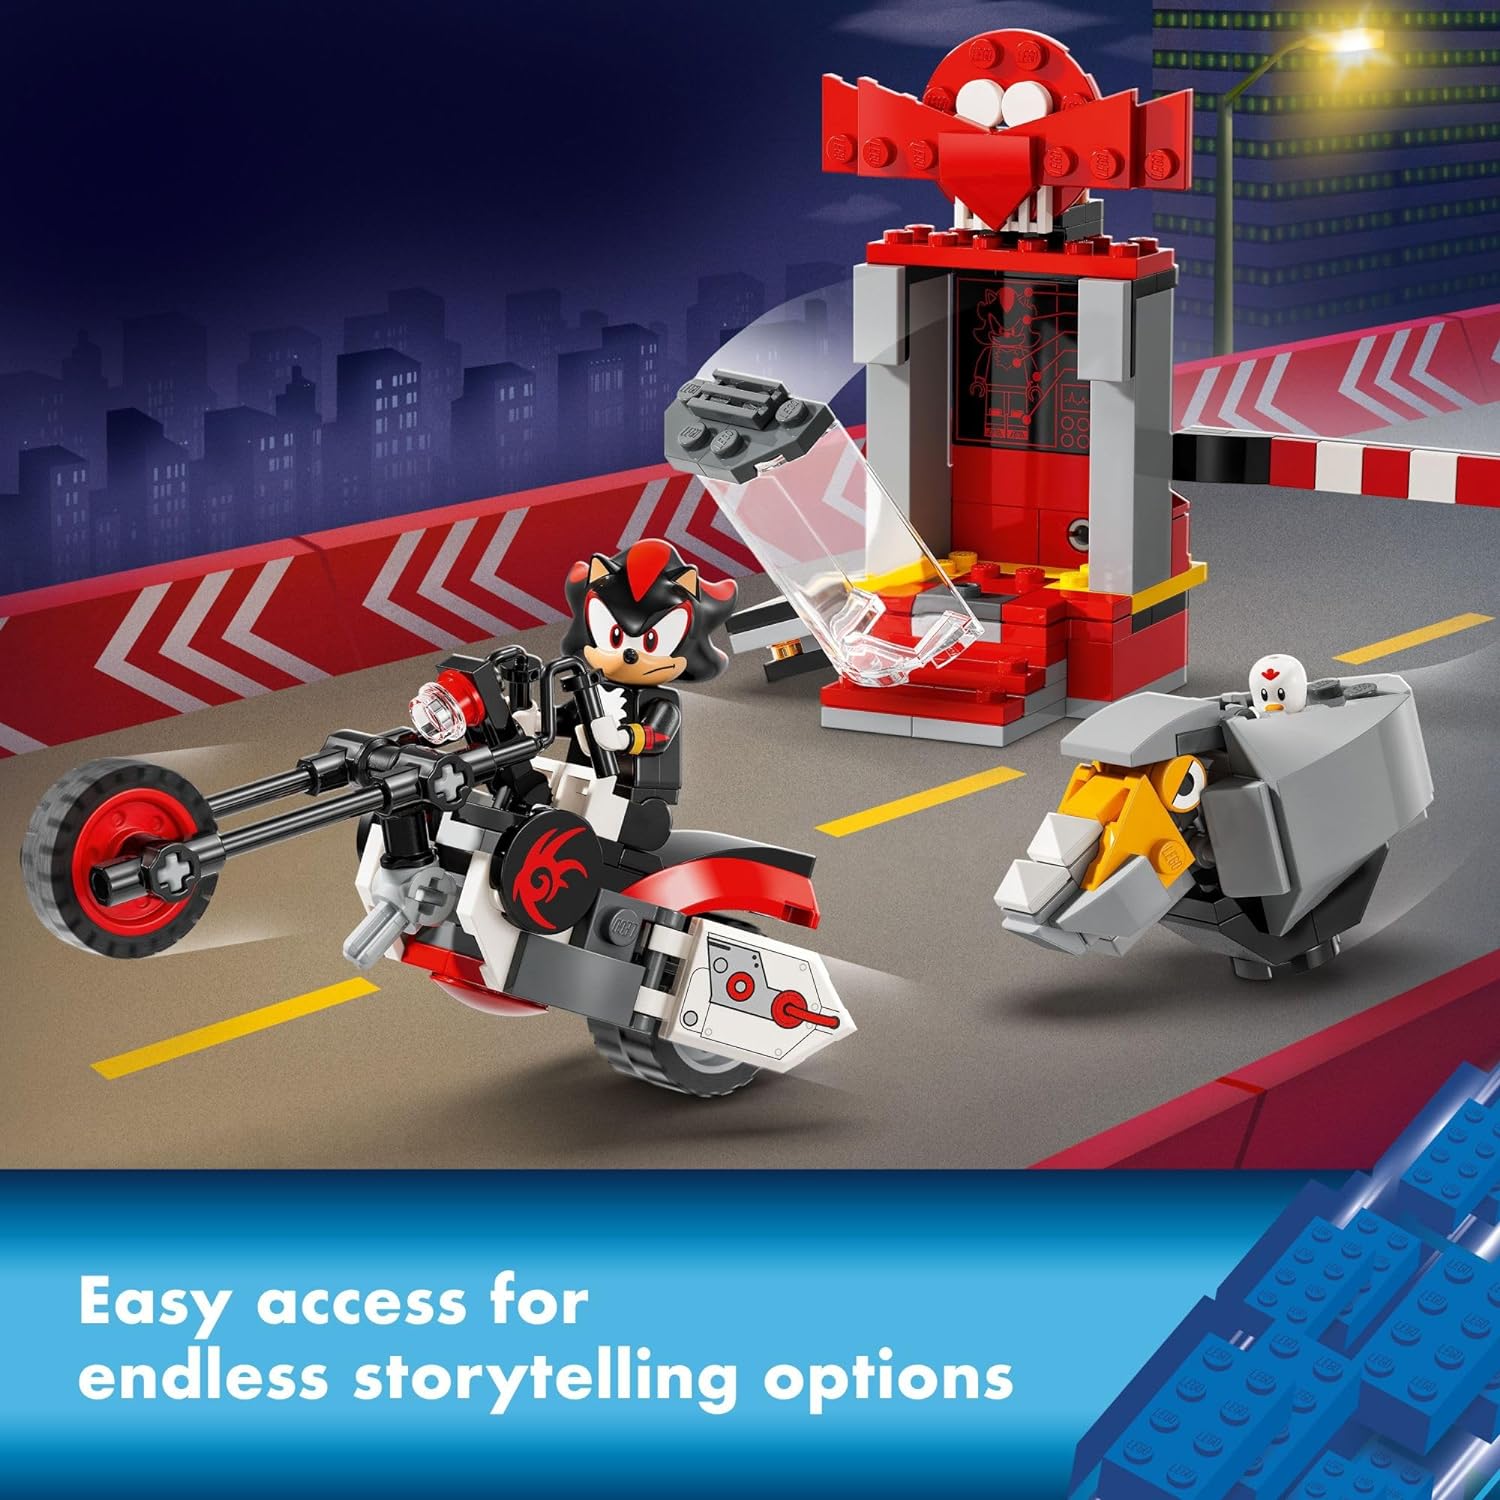 مجموعة بناء LEGO 76995 Sonic The Hedgehog Shadow The Hedgehog Escape، لعبة دراجة نارية، شخصيات ألعاب فيديو، لعبة سونيك للأطفال.